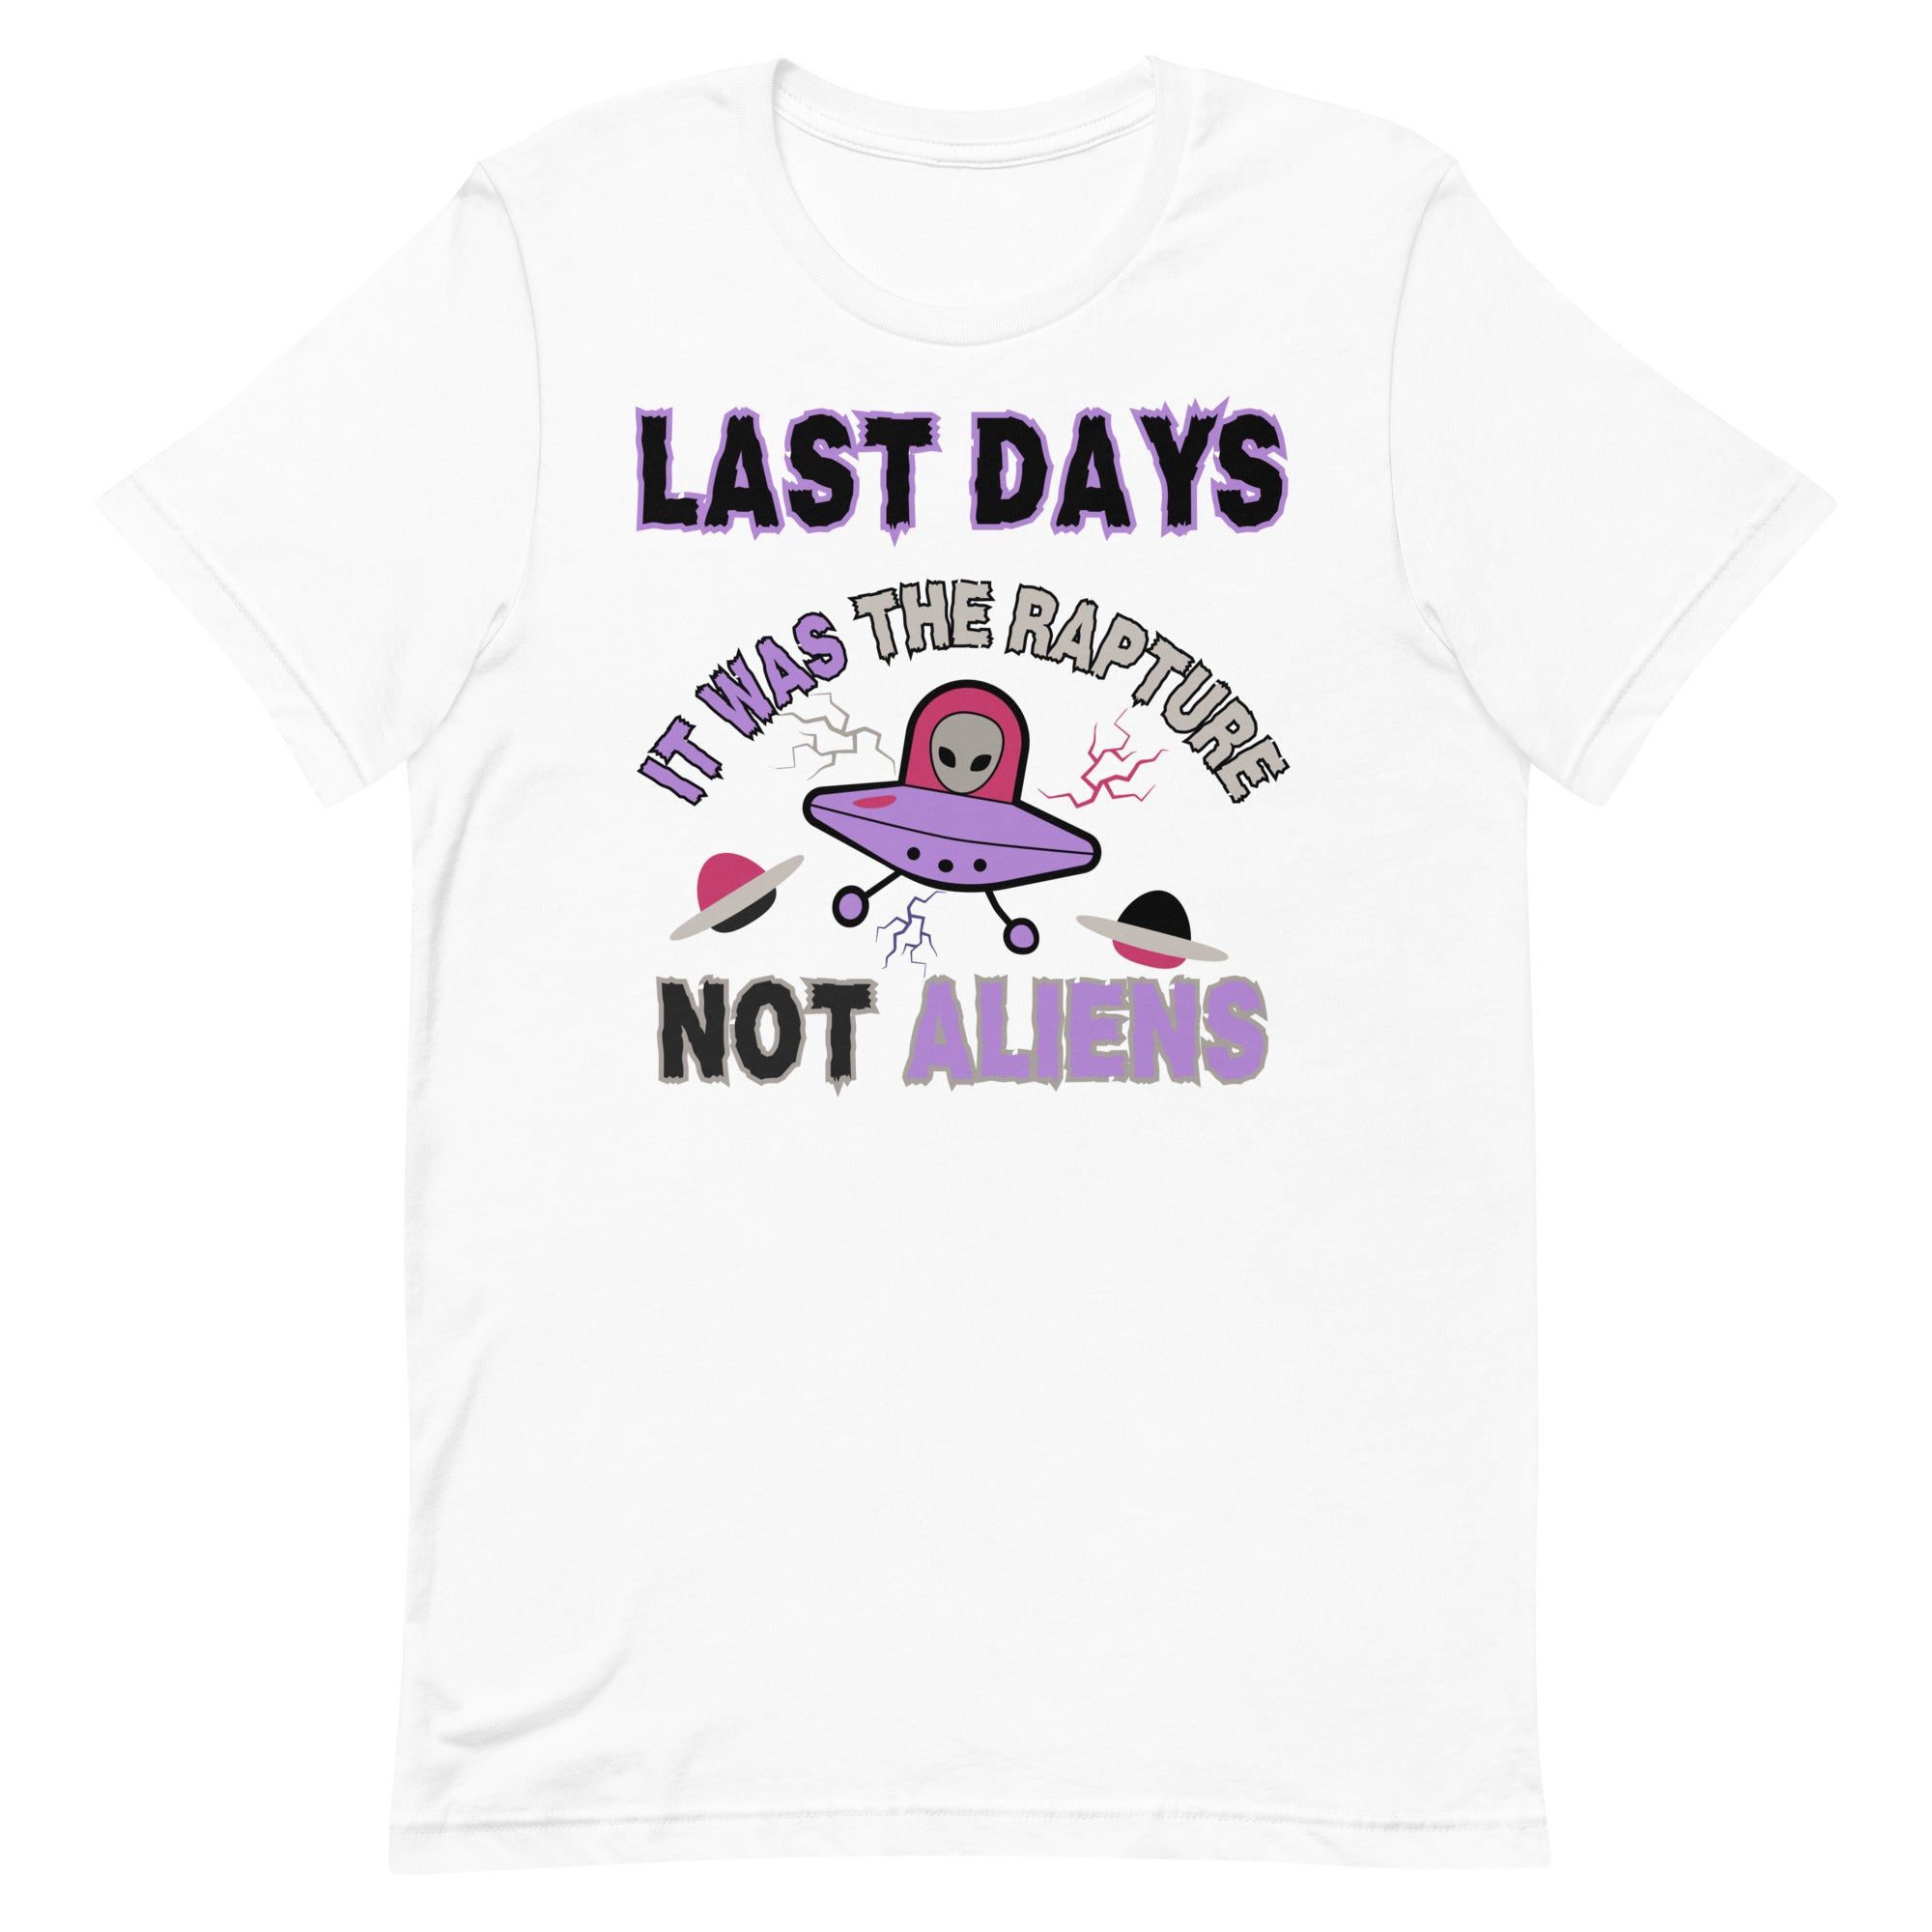 Last days Rapture Not Aliens Unisex t-shirt